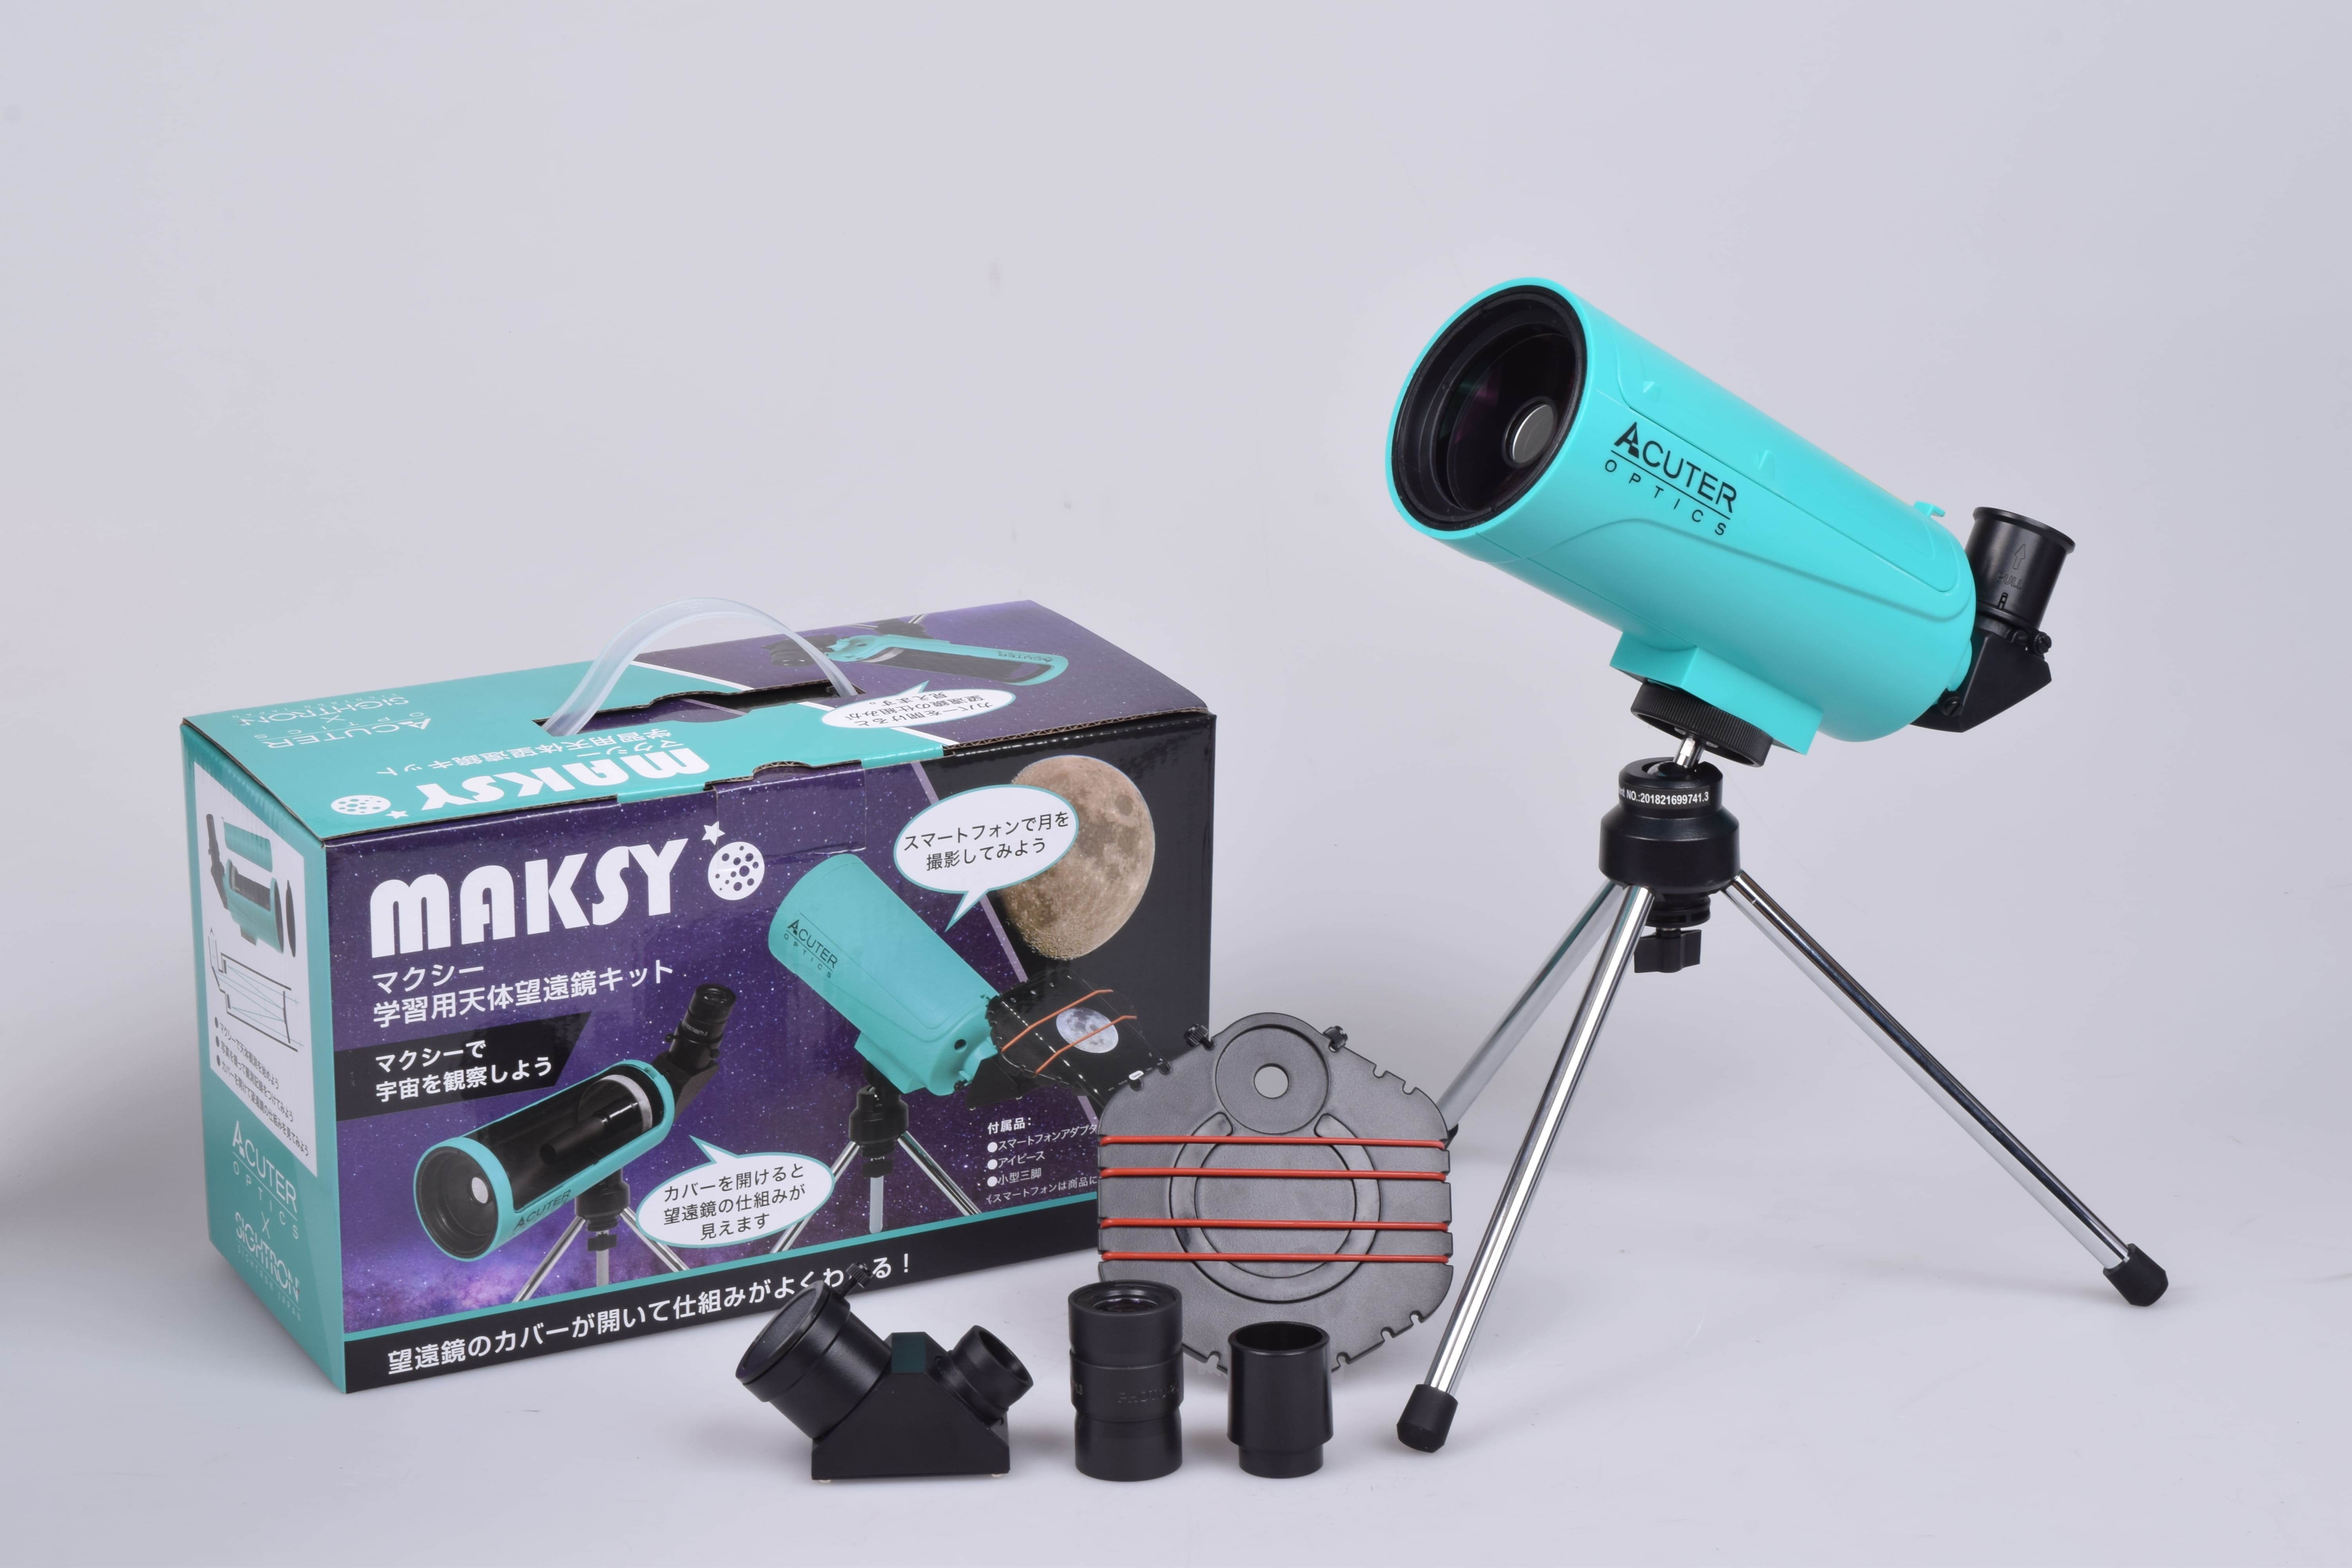 望遠鏡のしくみを楽しく学べる学習用天体望遠鏡キット Maksy60 Newtony 発売のお知らせ 株式会社サイトロンジャパンのプレスリリース